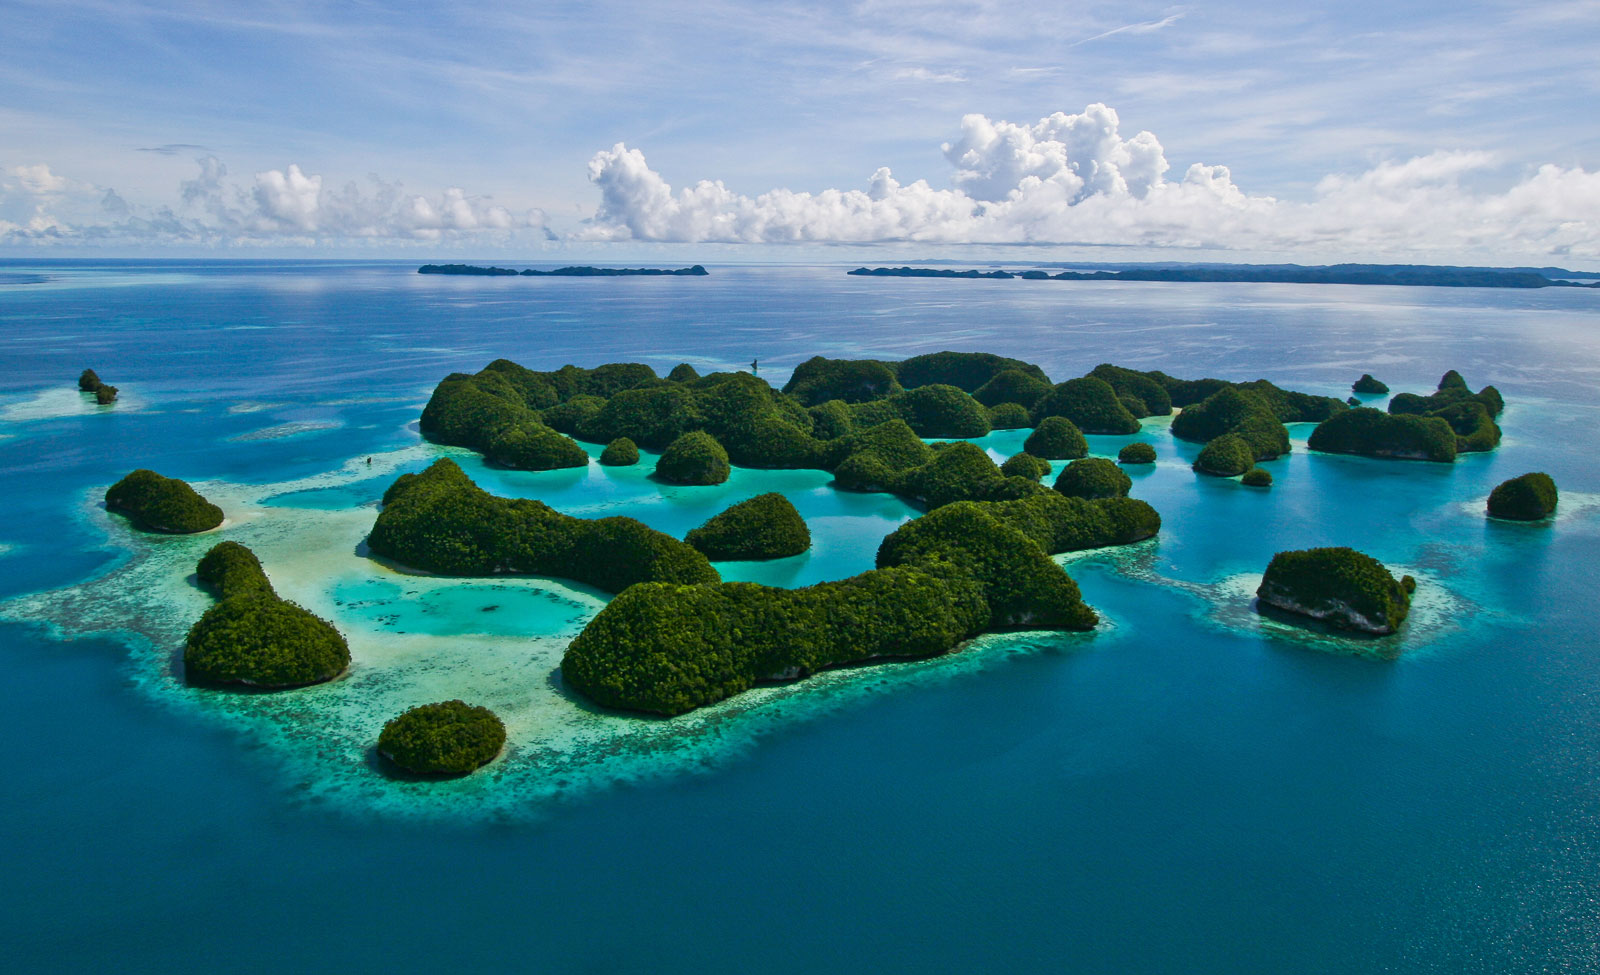 Mengenal Republik Palau, Jiran yang Hampir Terlupakan